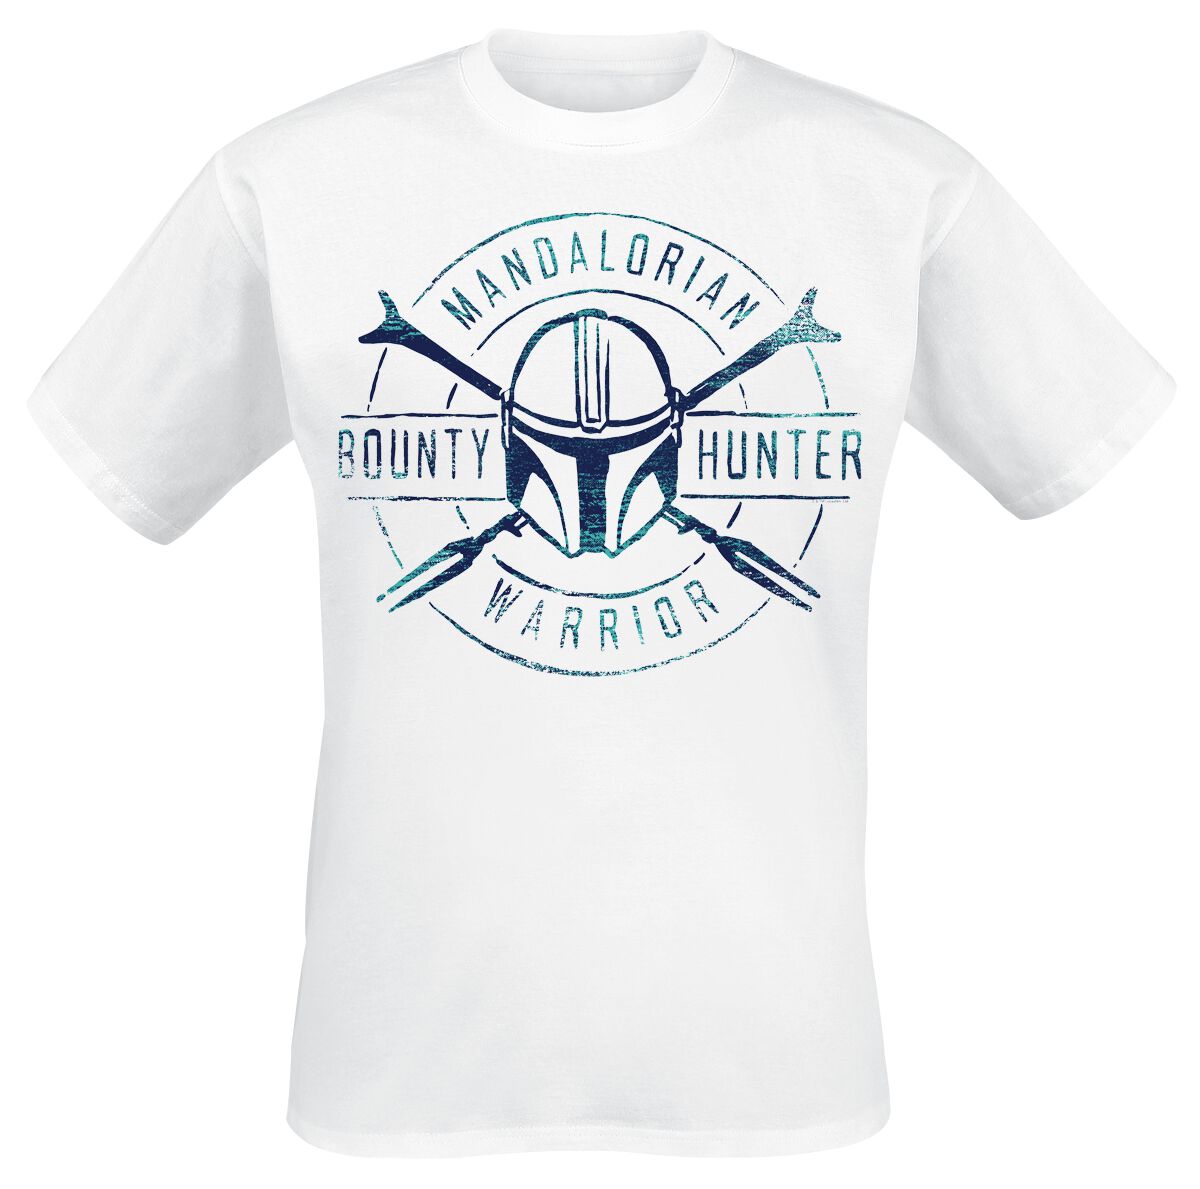 Star Wars T-Shirt - The Mandalorian - Bounty Hunter Warrior - S bis 5XL - für Männer - Größe 4XL - weiß  - Lizenzierter Fanartikel von Star Wars